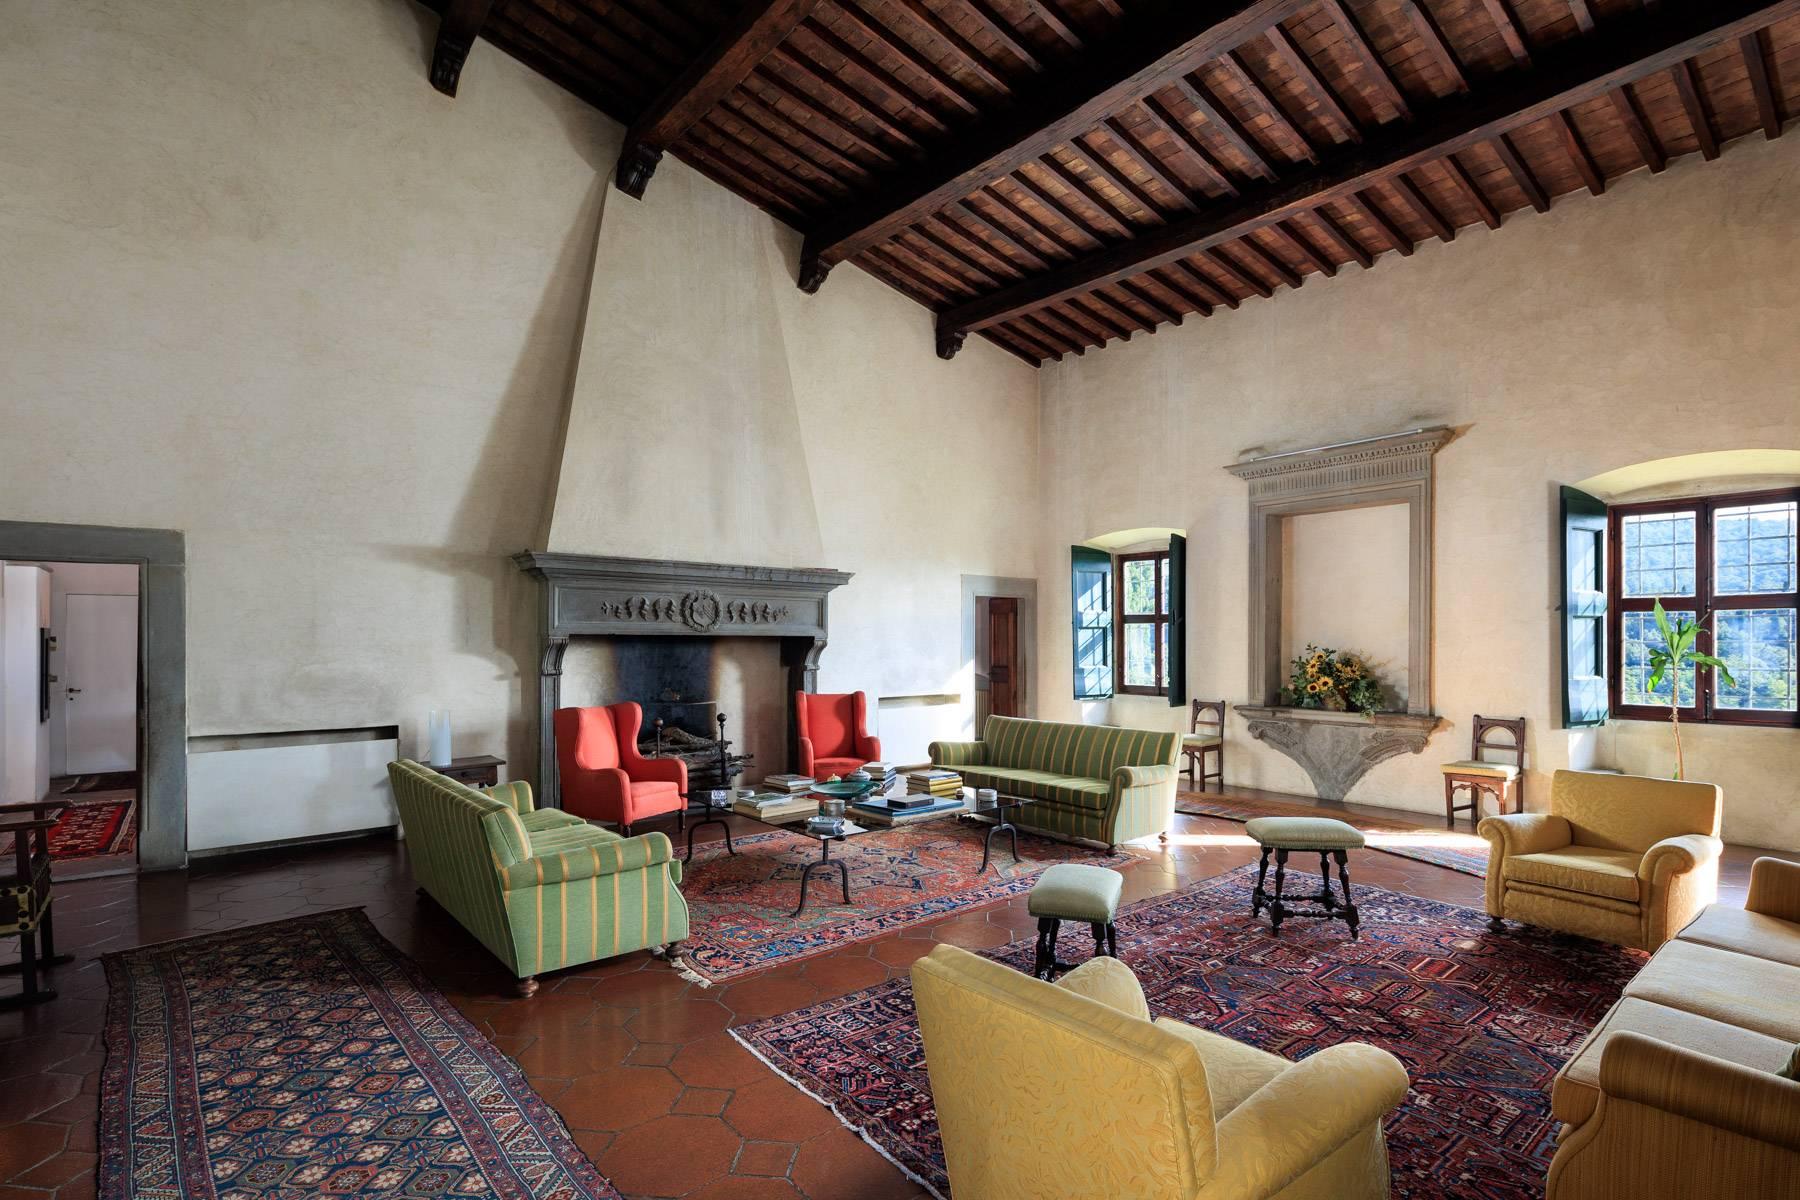 Grande villa padronale d'epoca nella più rinomata zona olearia vicino a Firenze - 7